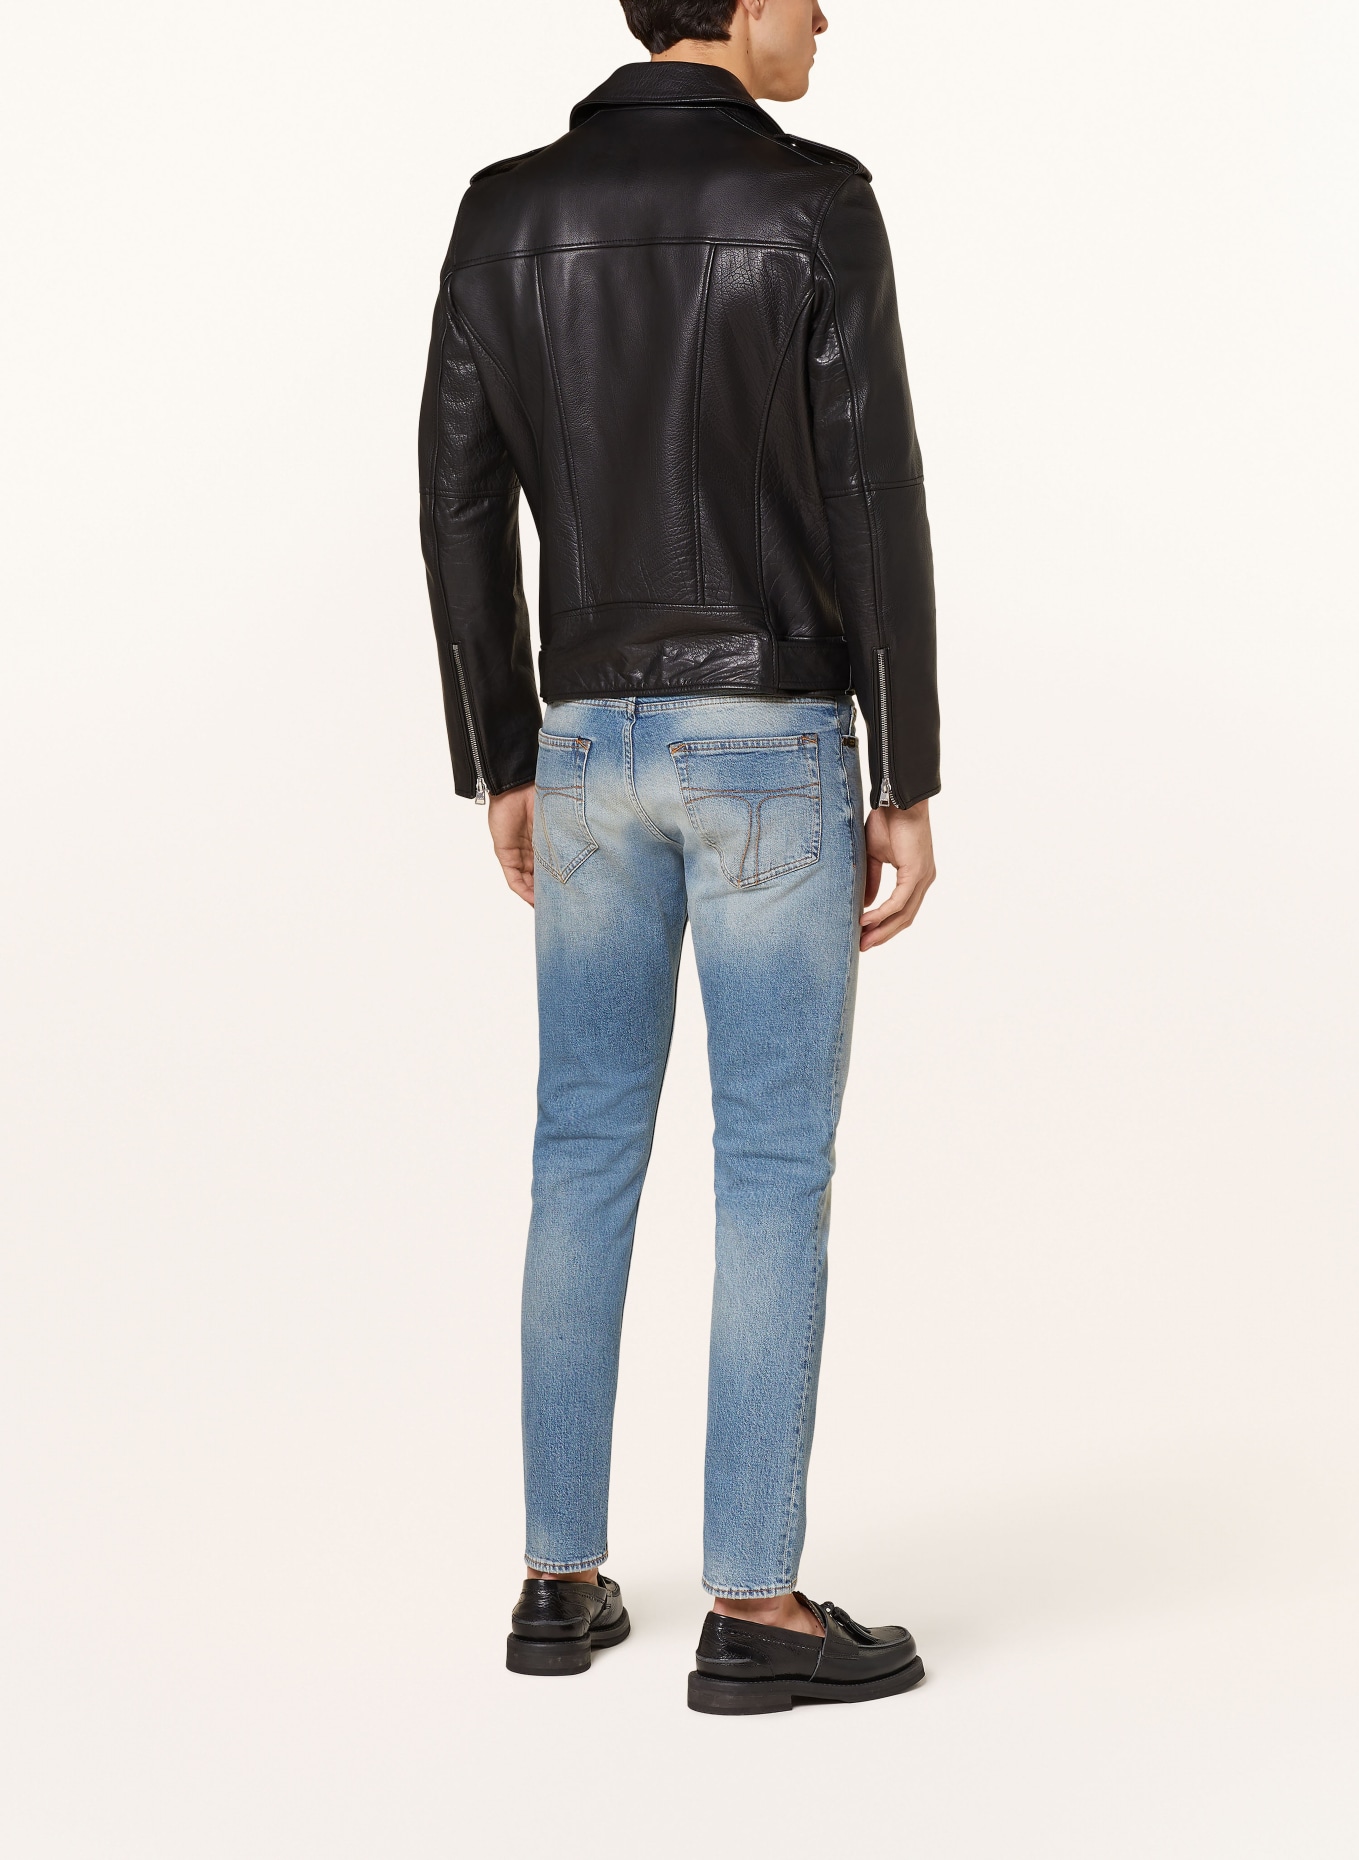 TIGER OF SWEDEN Jeans PISTOLERO slim fit, Color: 200 Light blue (Image 3)